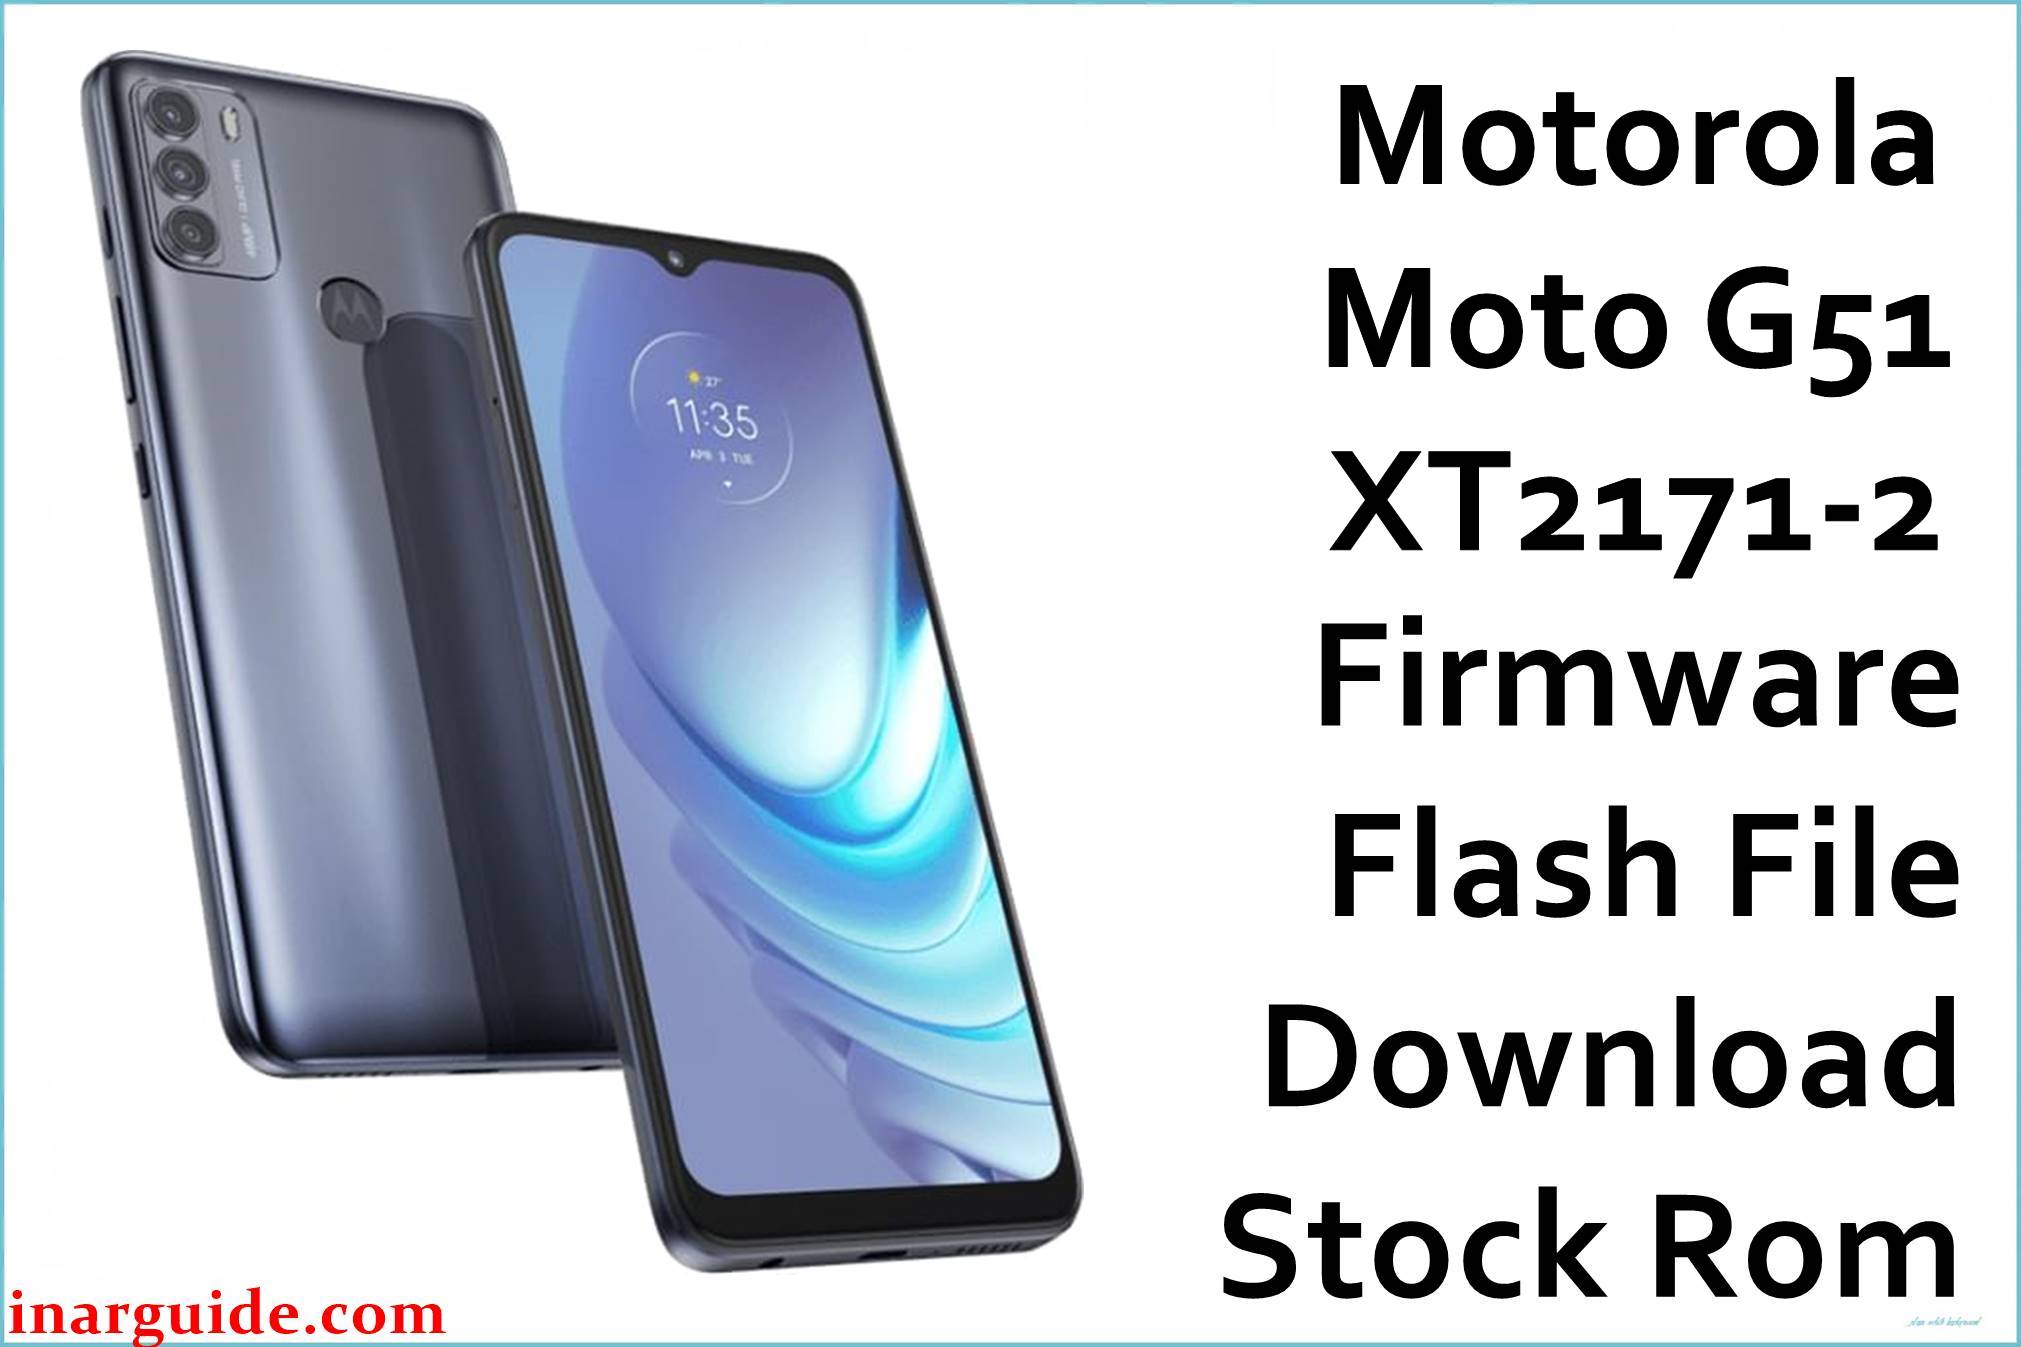 Motorola Moto G51 XT2171-2